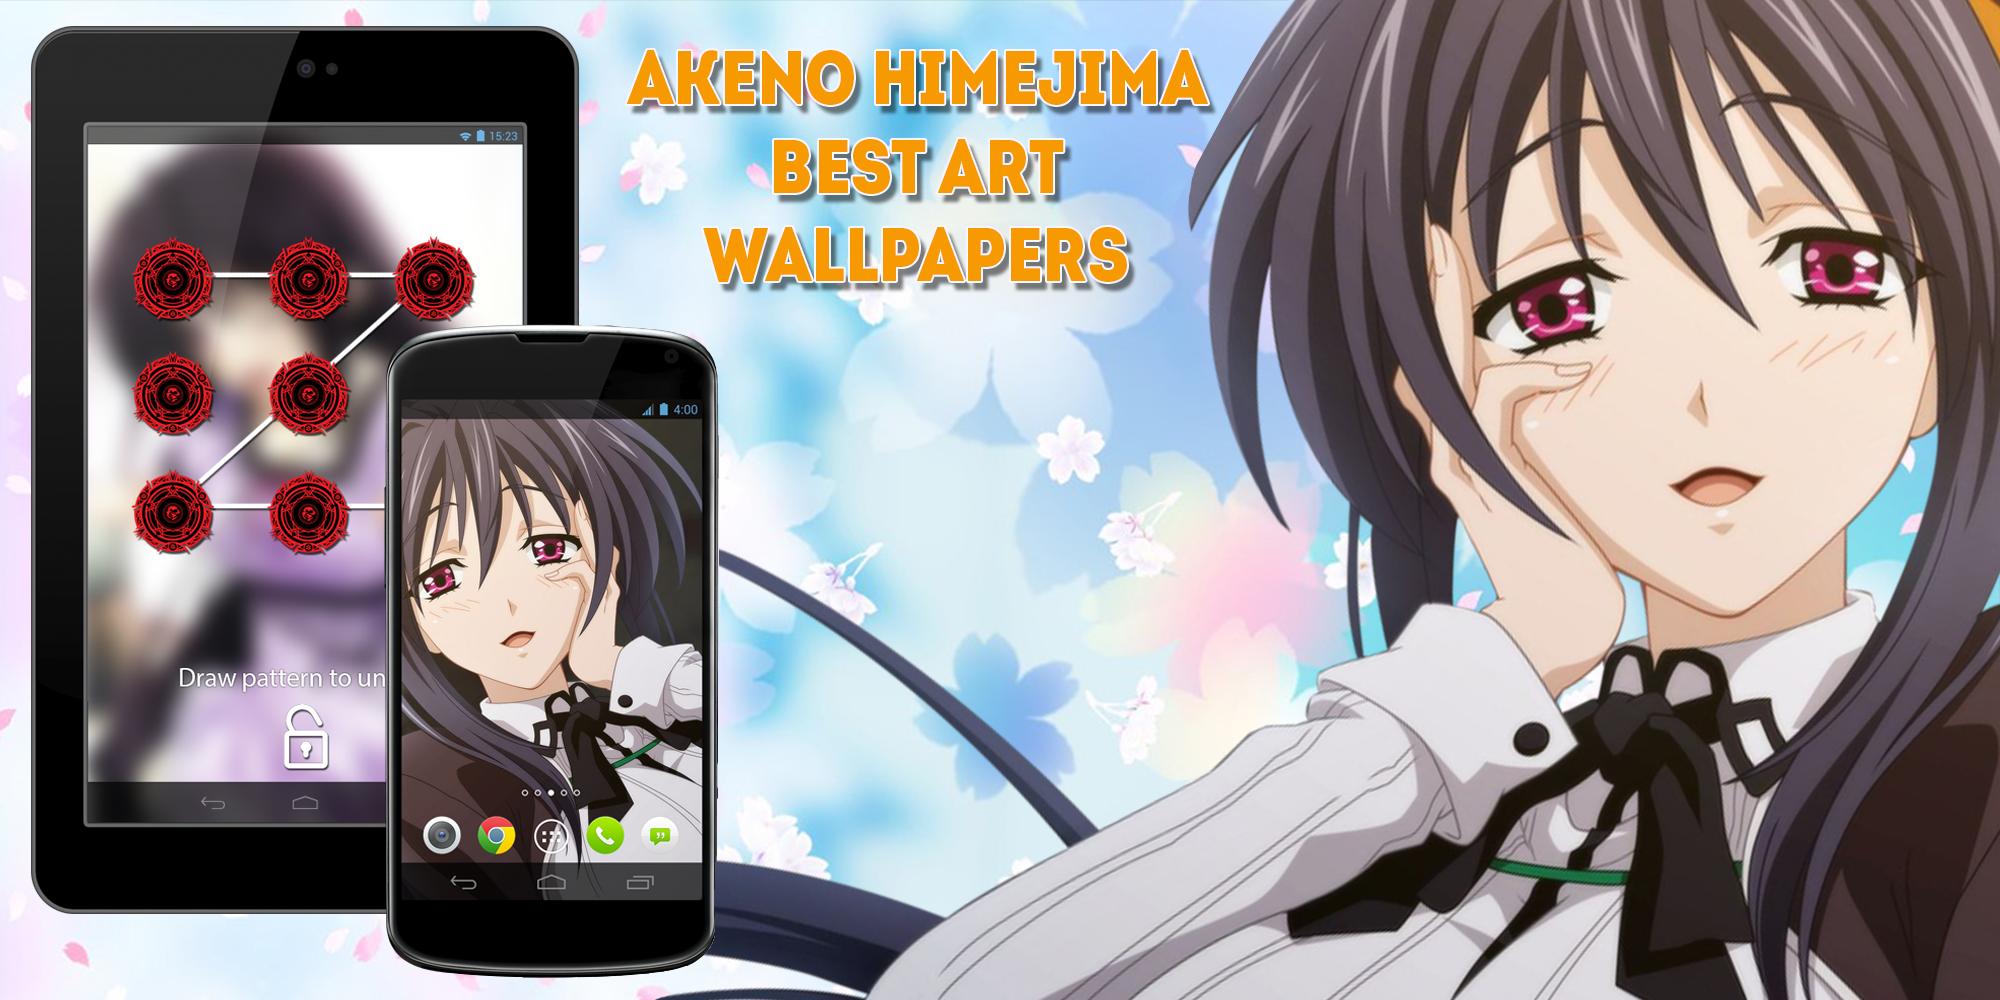 Akeno himejima åå æä anime locker wallpapers apk fãr android herunterladen